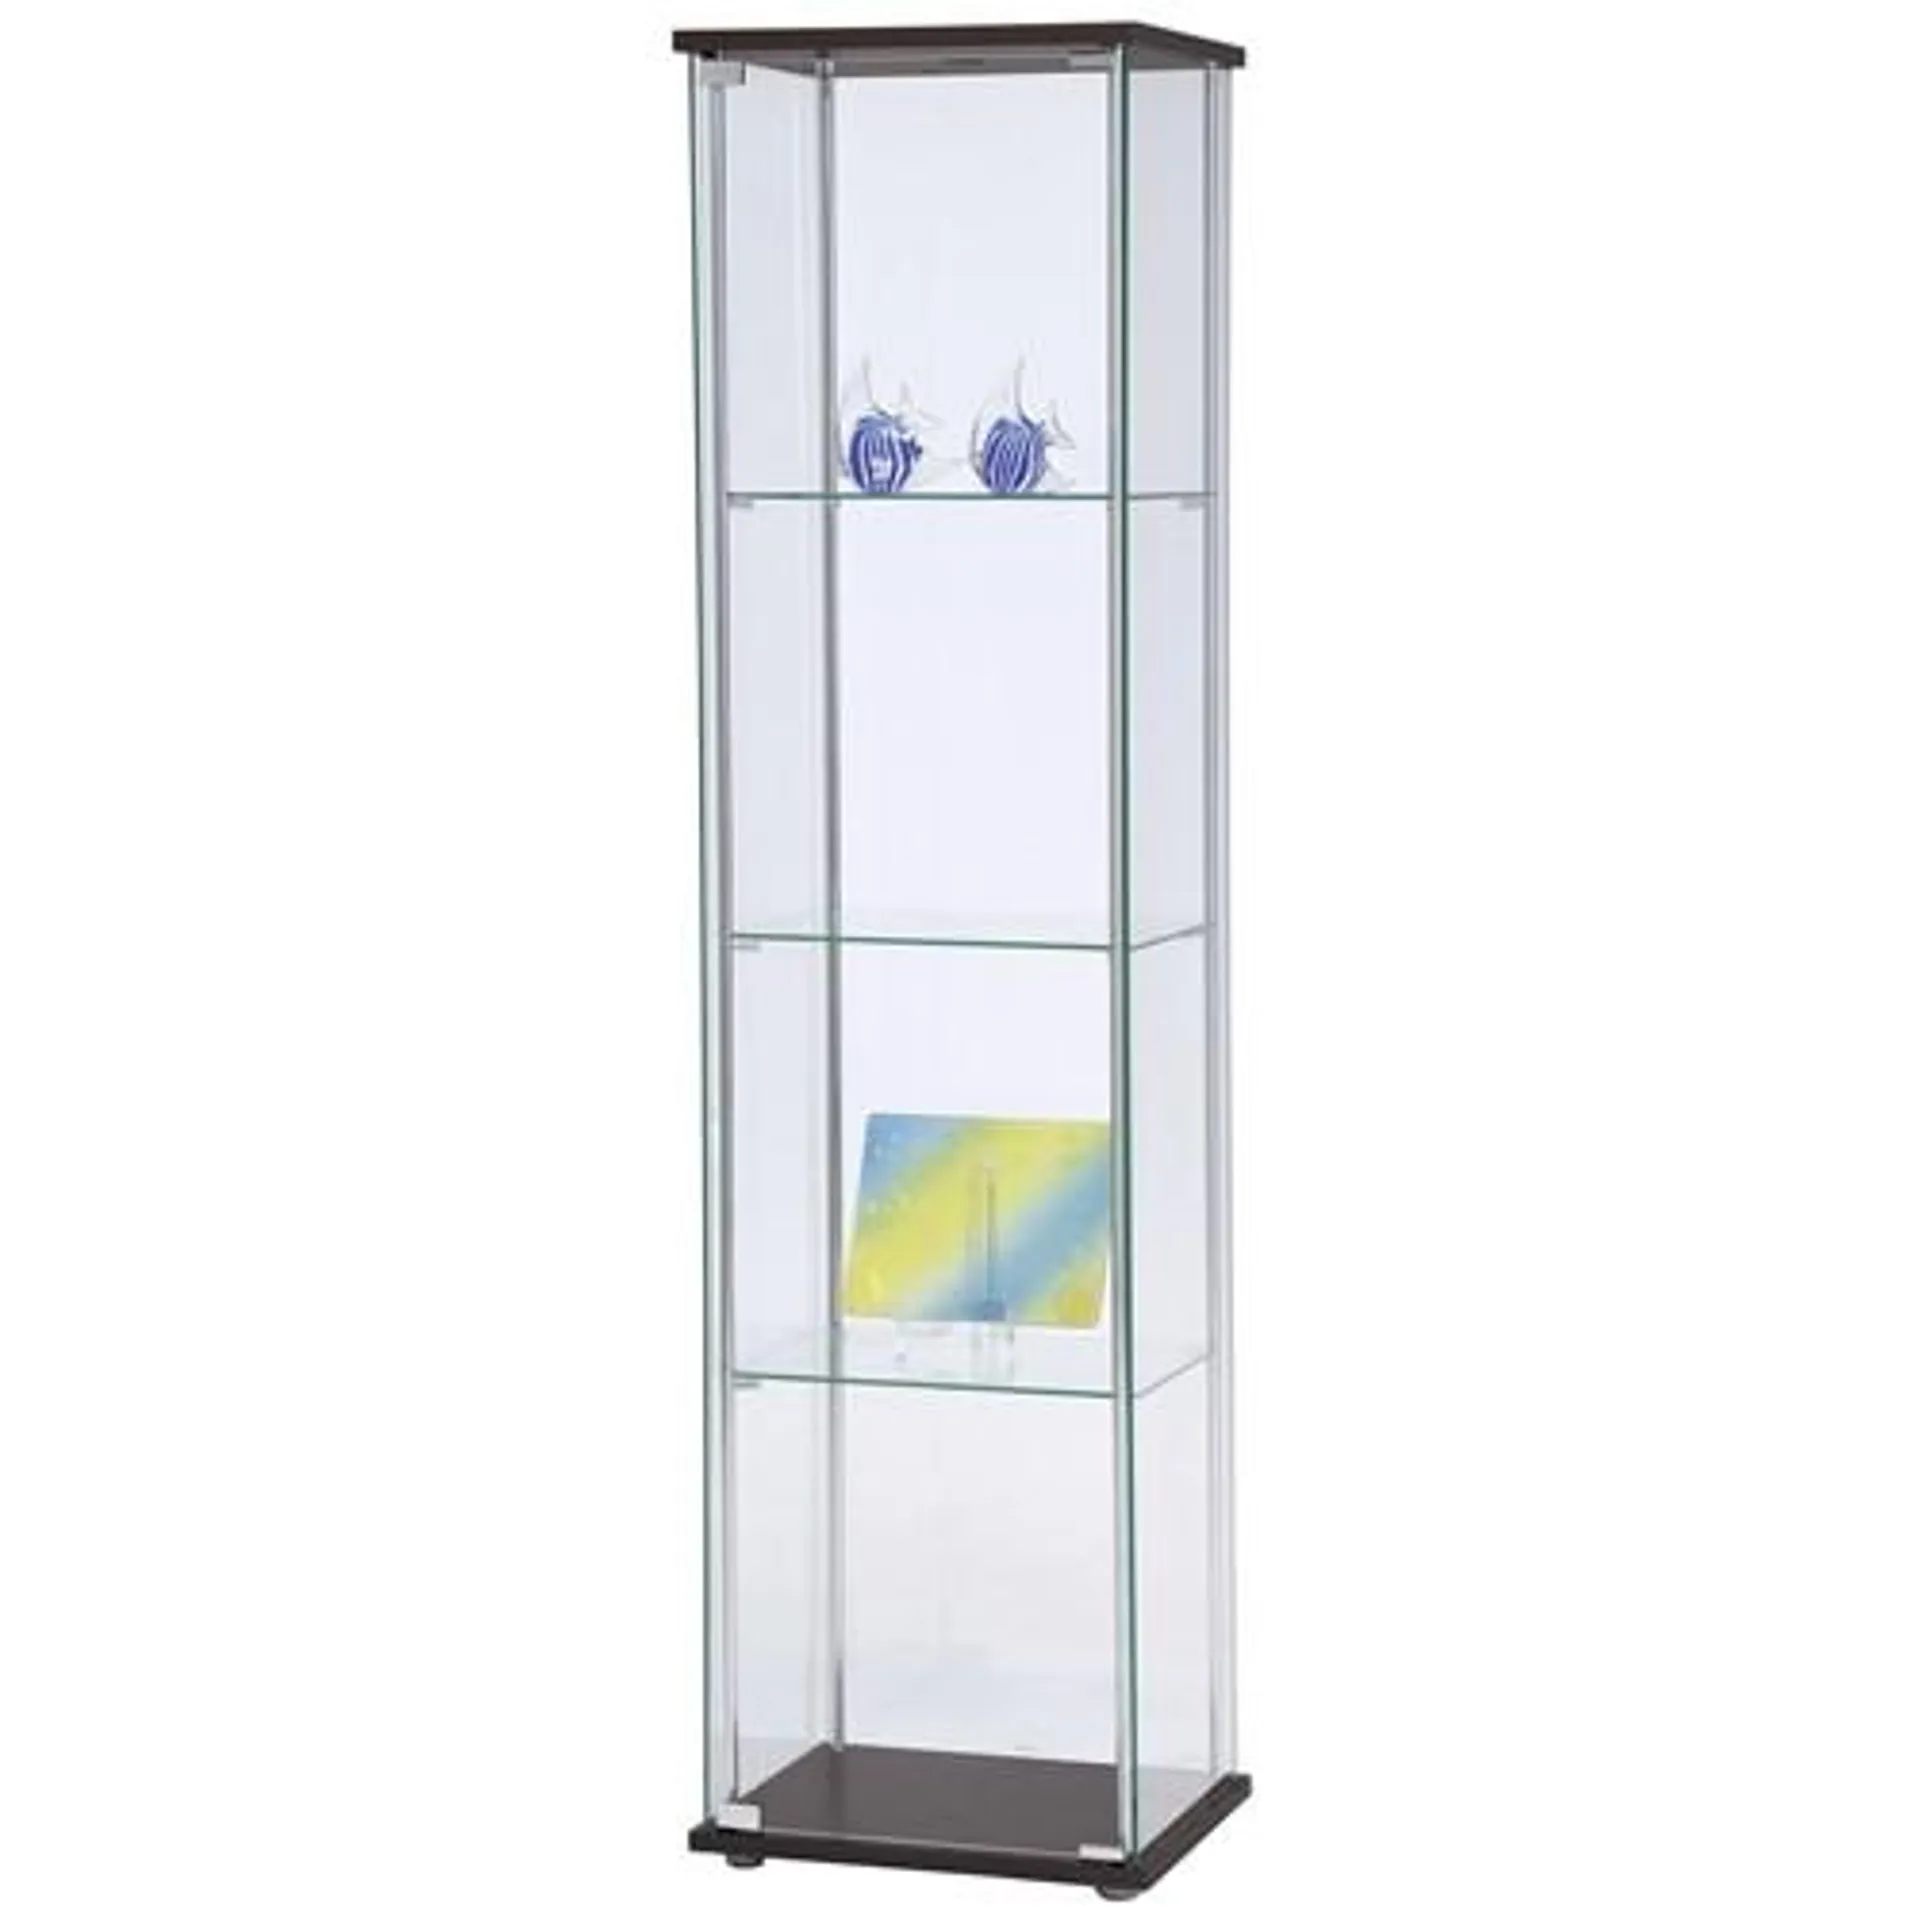 4 Tier 1 Door Glass Cabinet